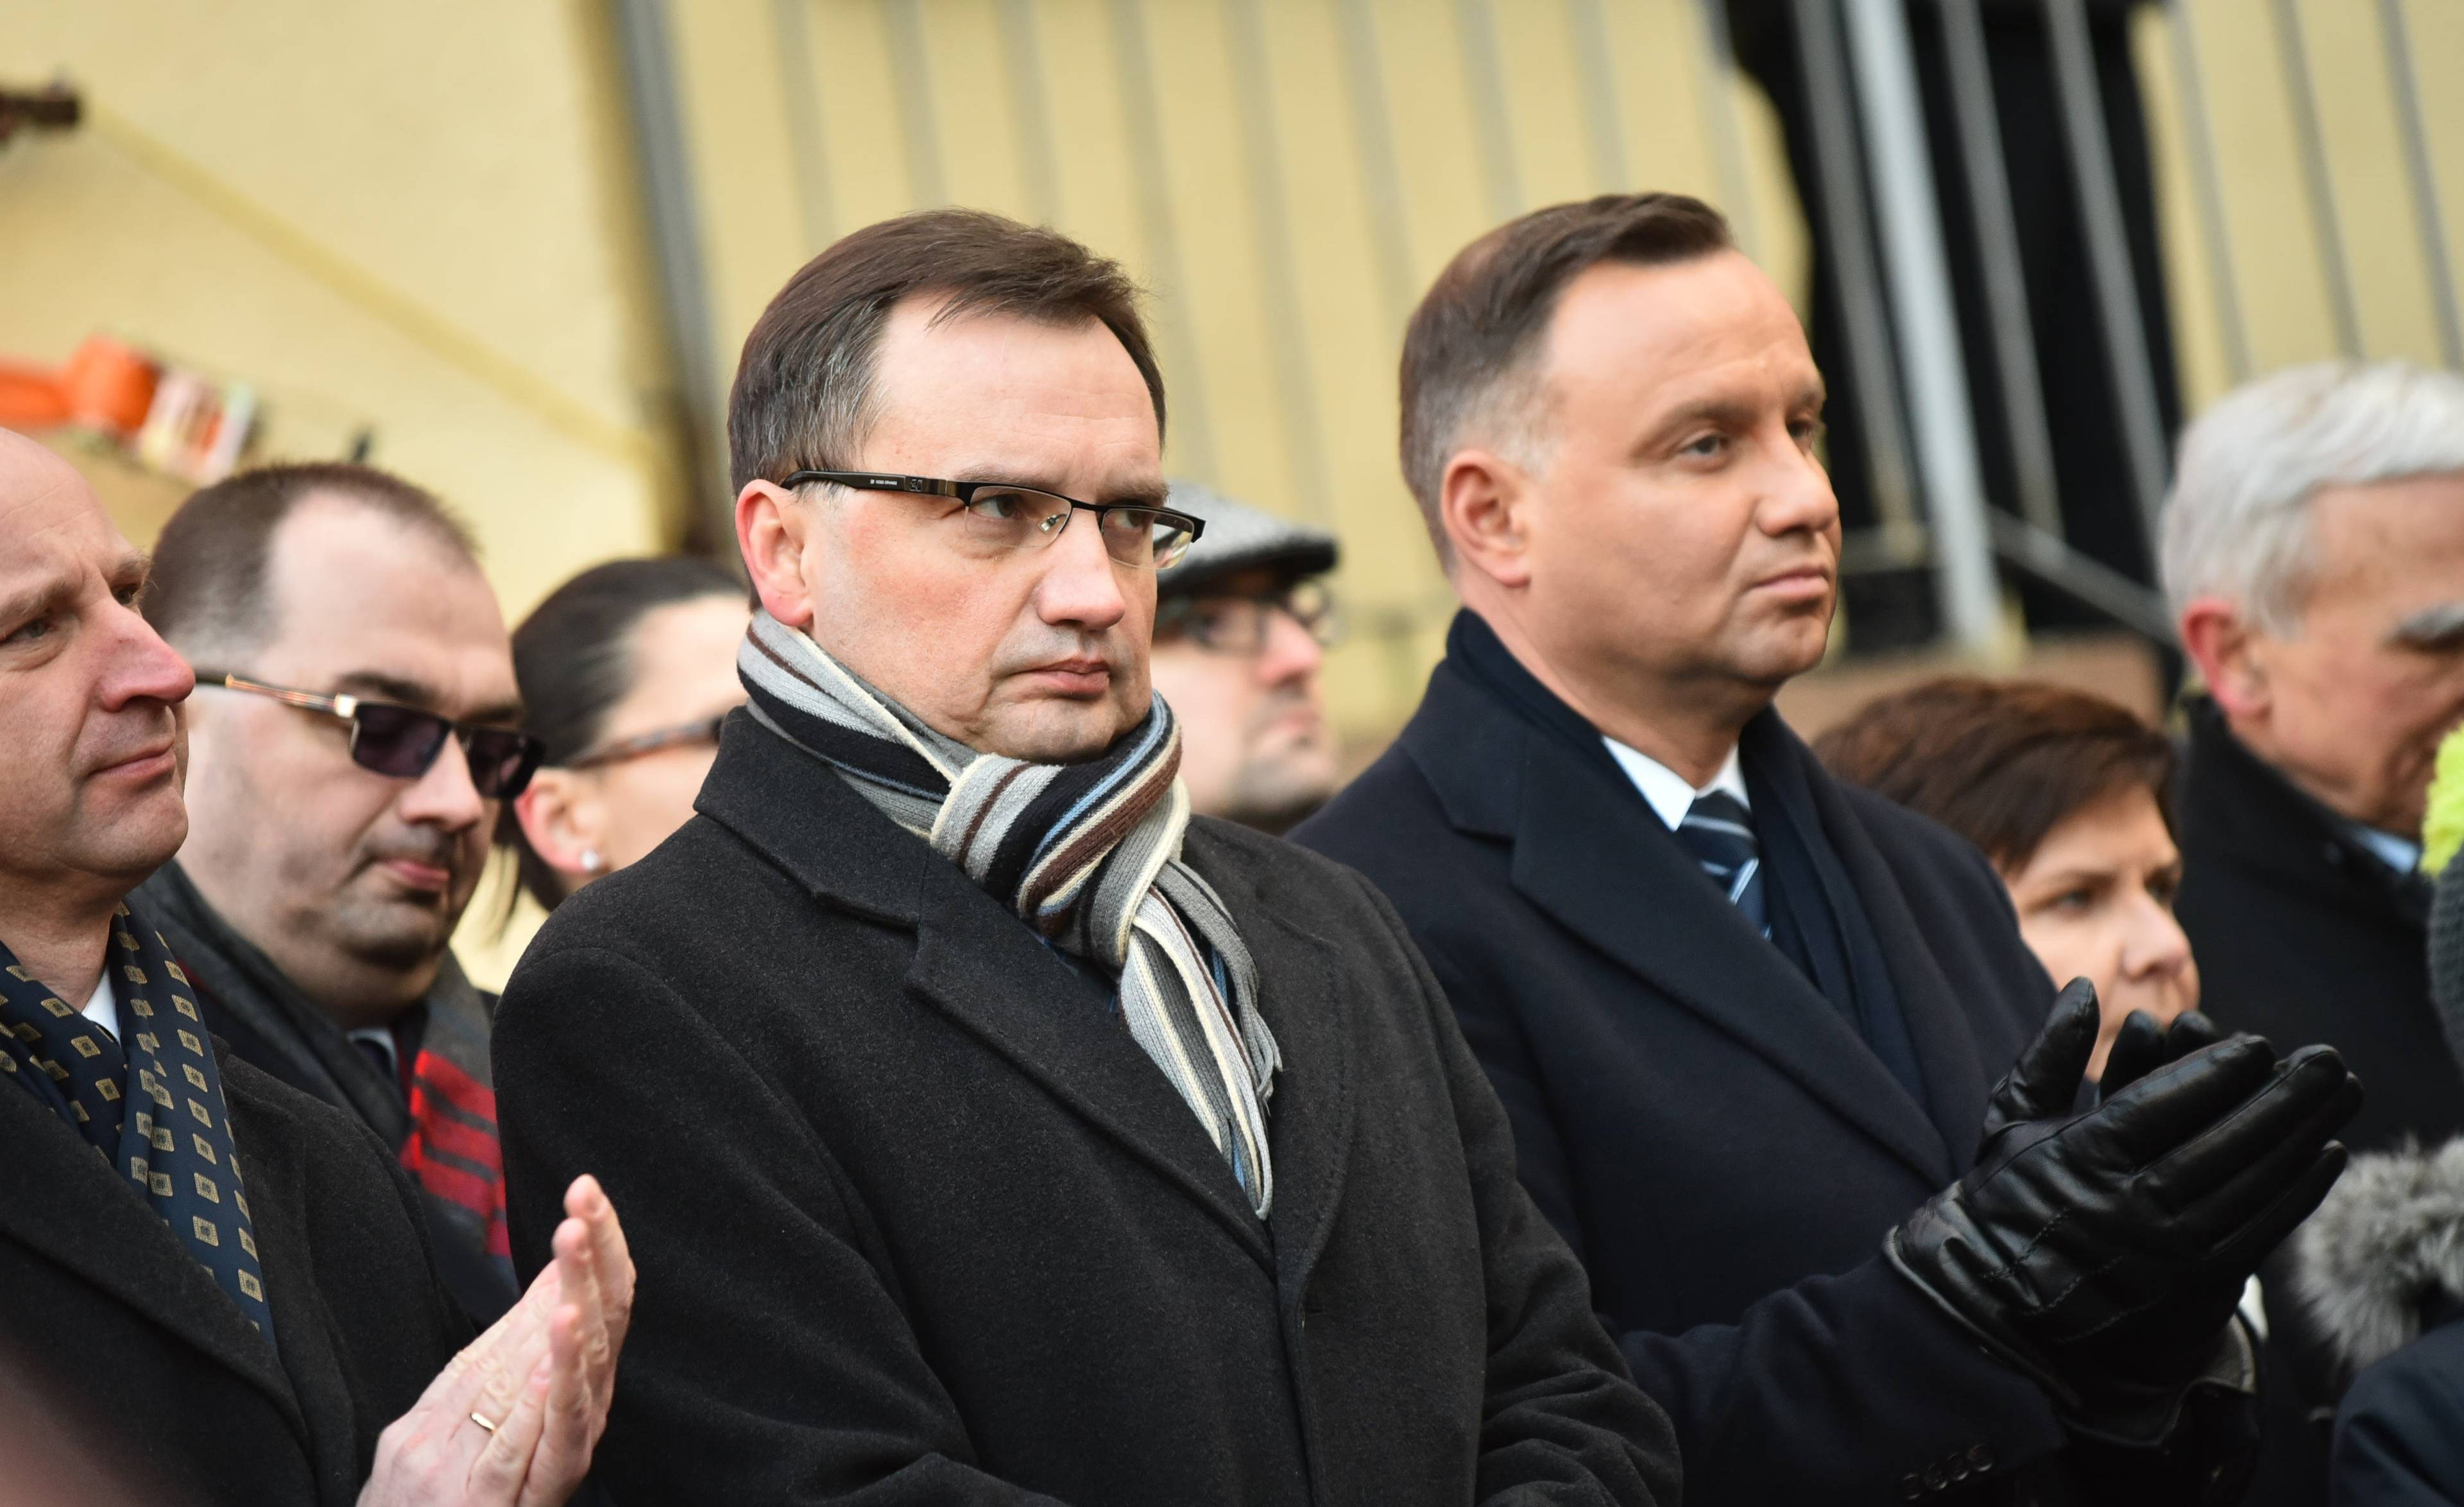 Zbigniew Ziobro i Andrzej Duda stoją obok siebie na świeżym powietrzu, obaj ubrani w płaszcze